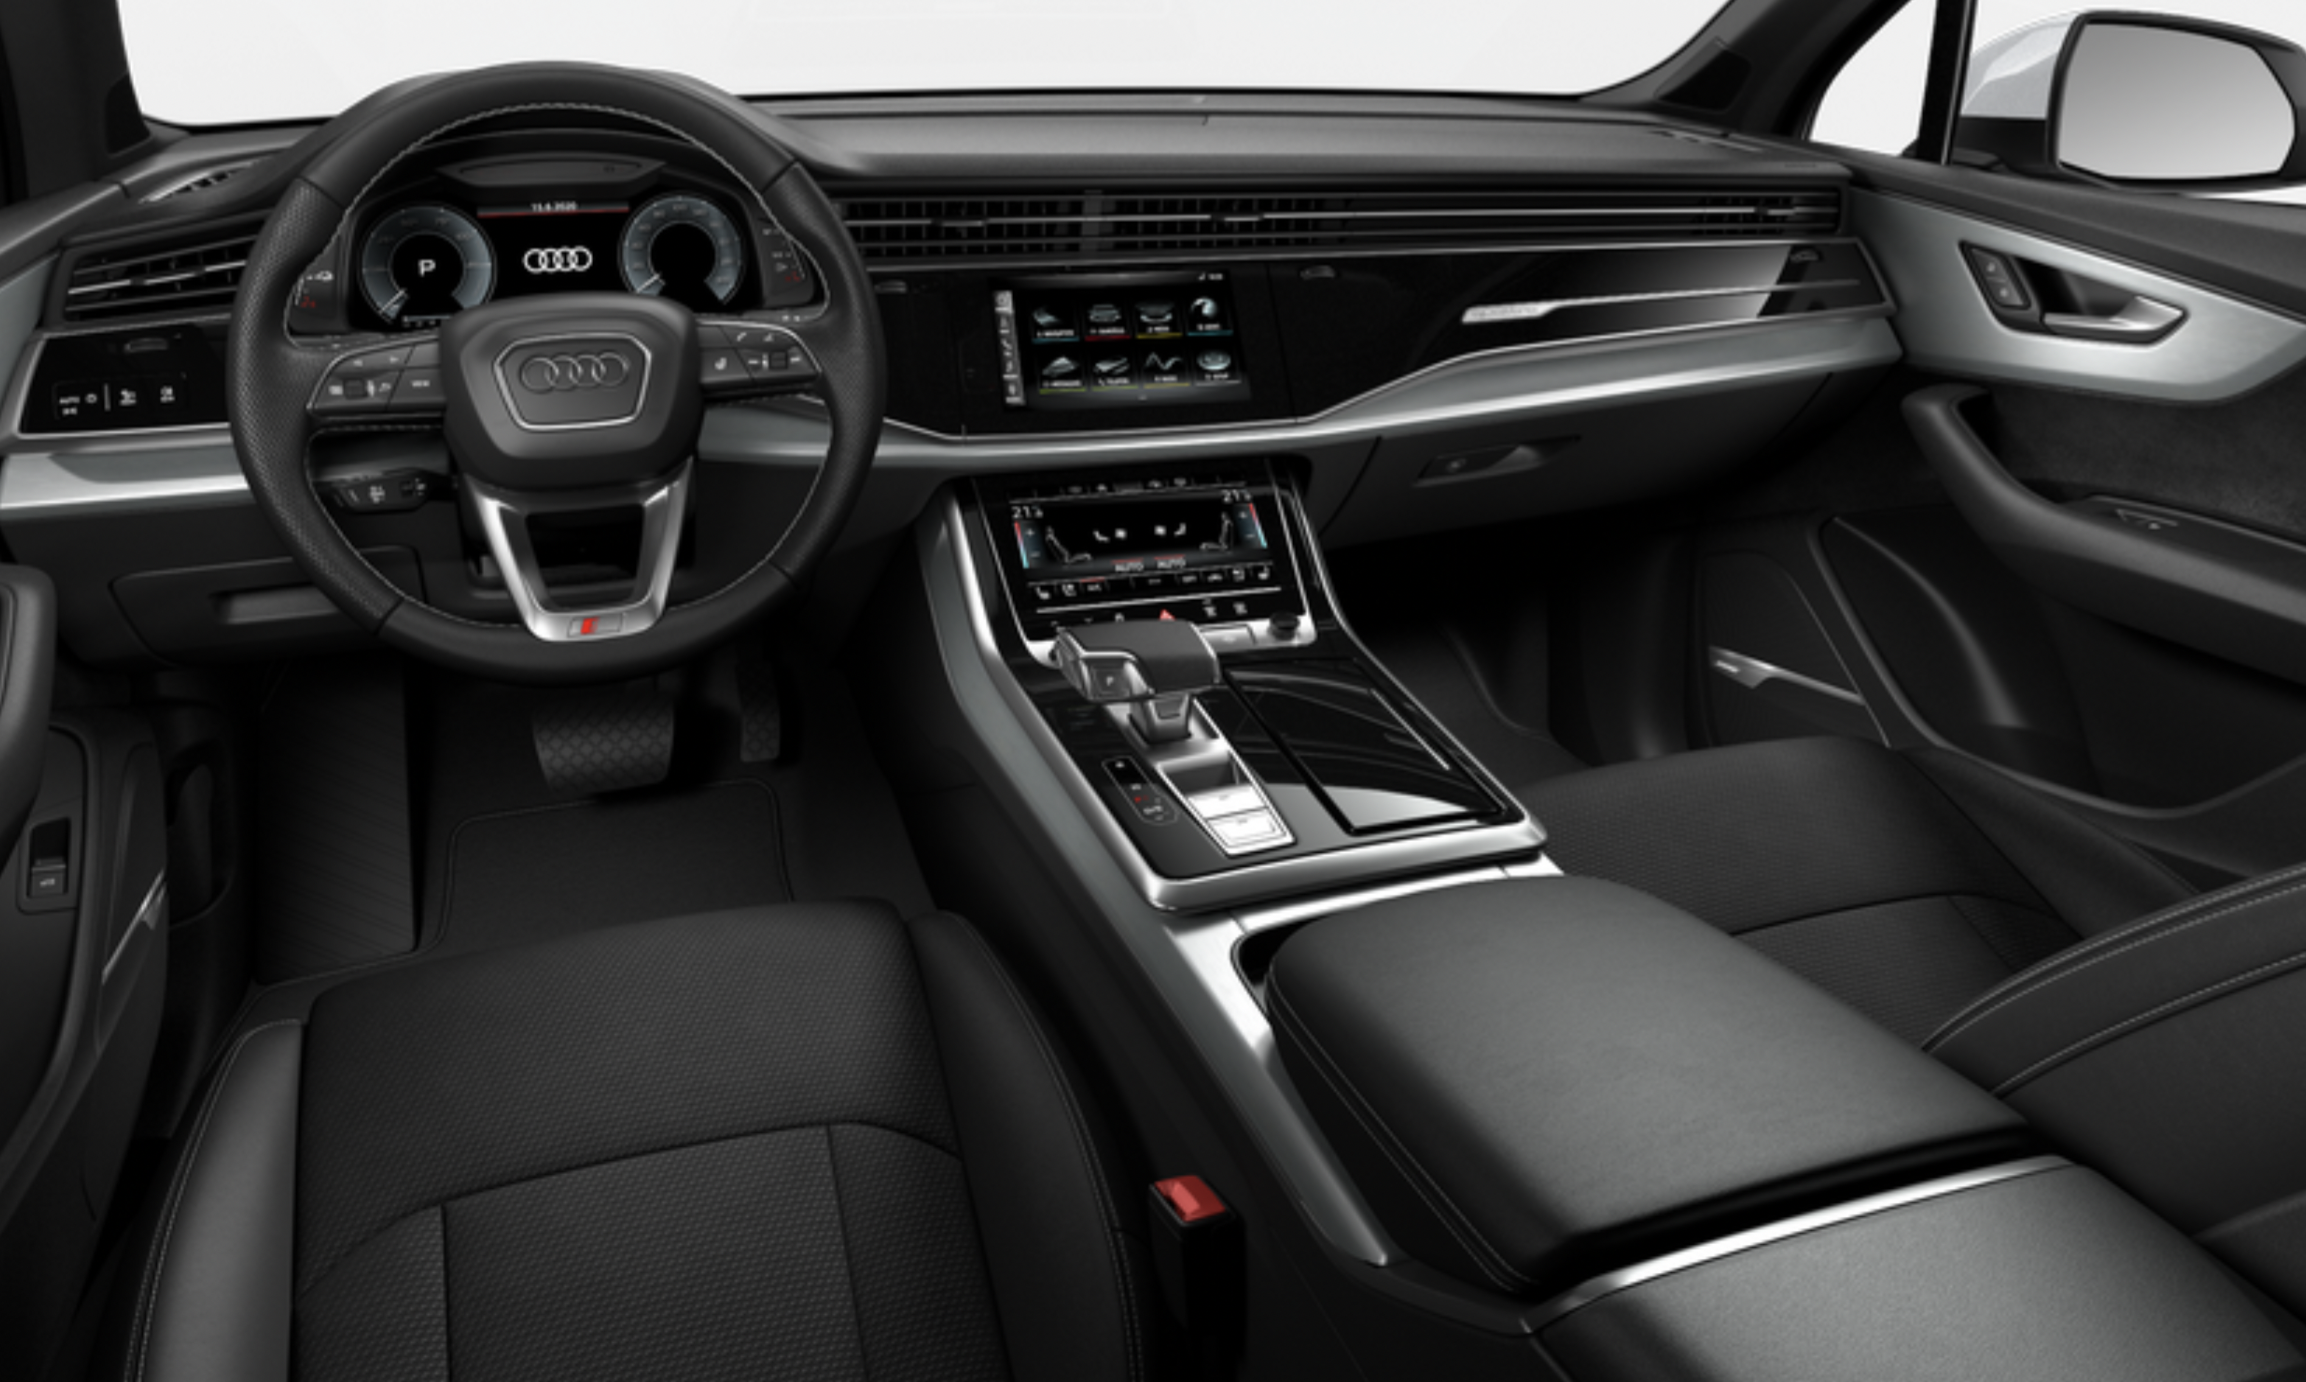 Audi Q7 55 TFSI E HYBRID QUATTRO S-LINE | nový plug-in hybrid | moderní měsktské hybridní SUV | praktická výbava | super cena 1.819.000,- Kč bez DPH